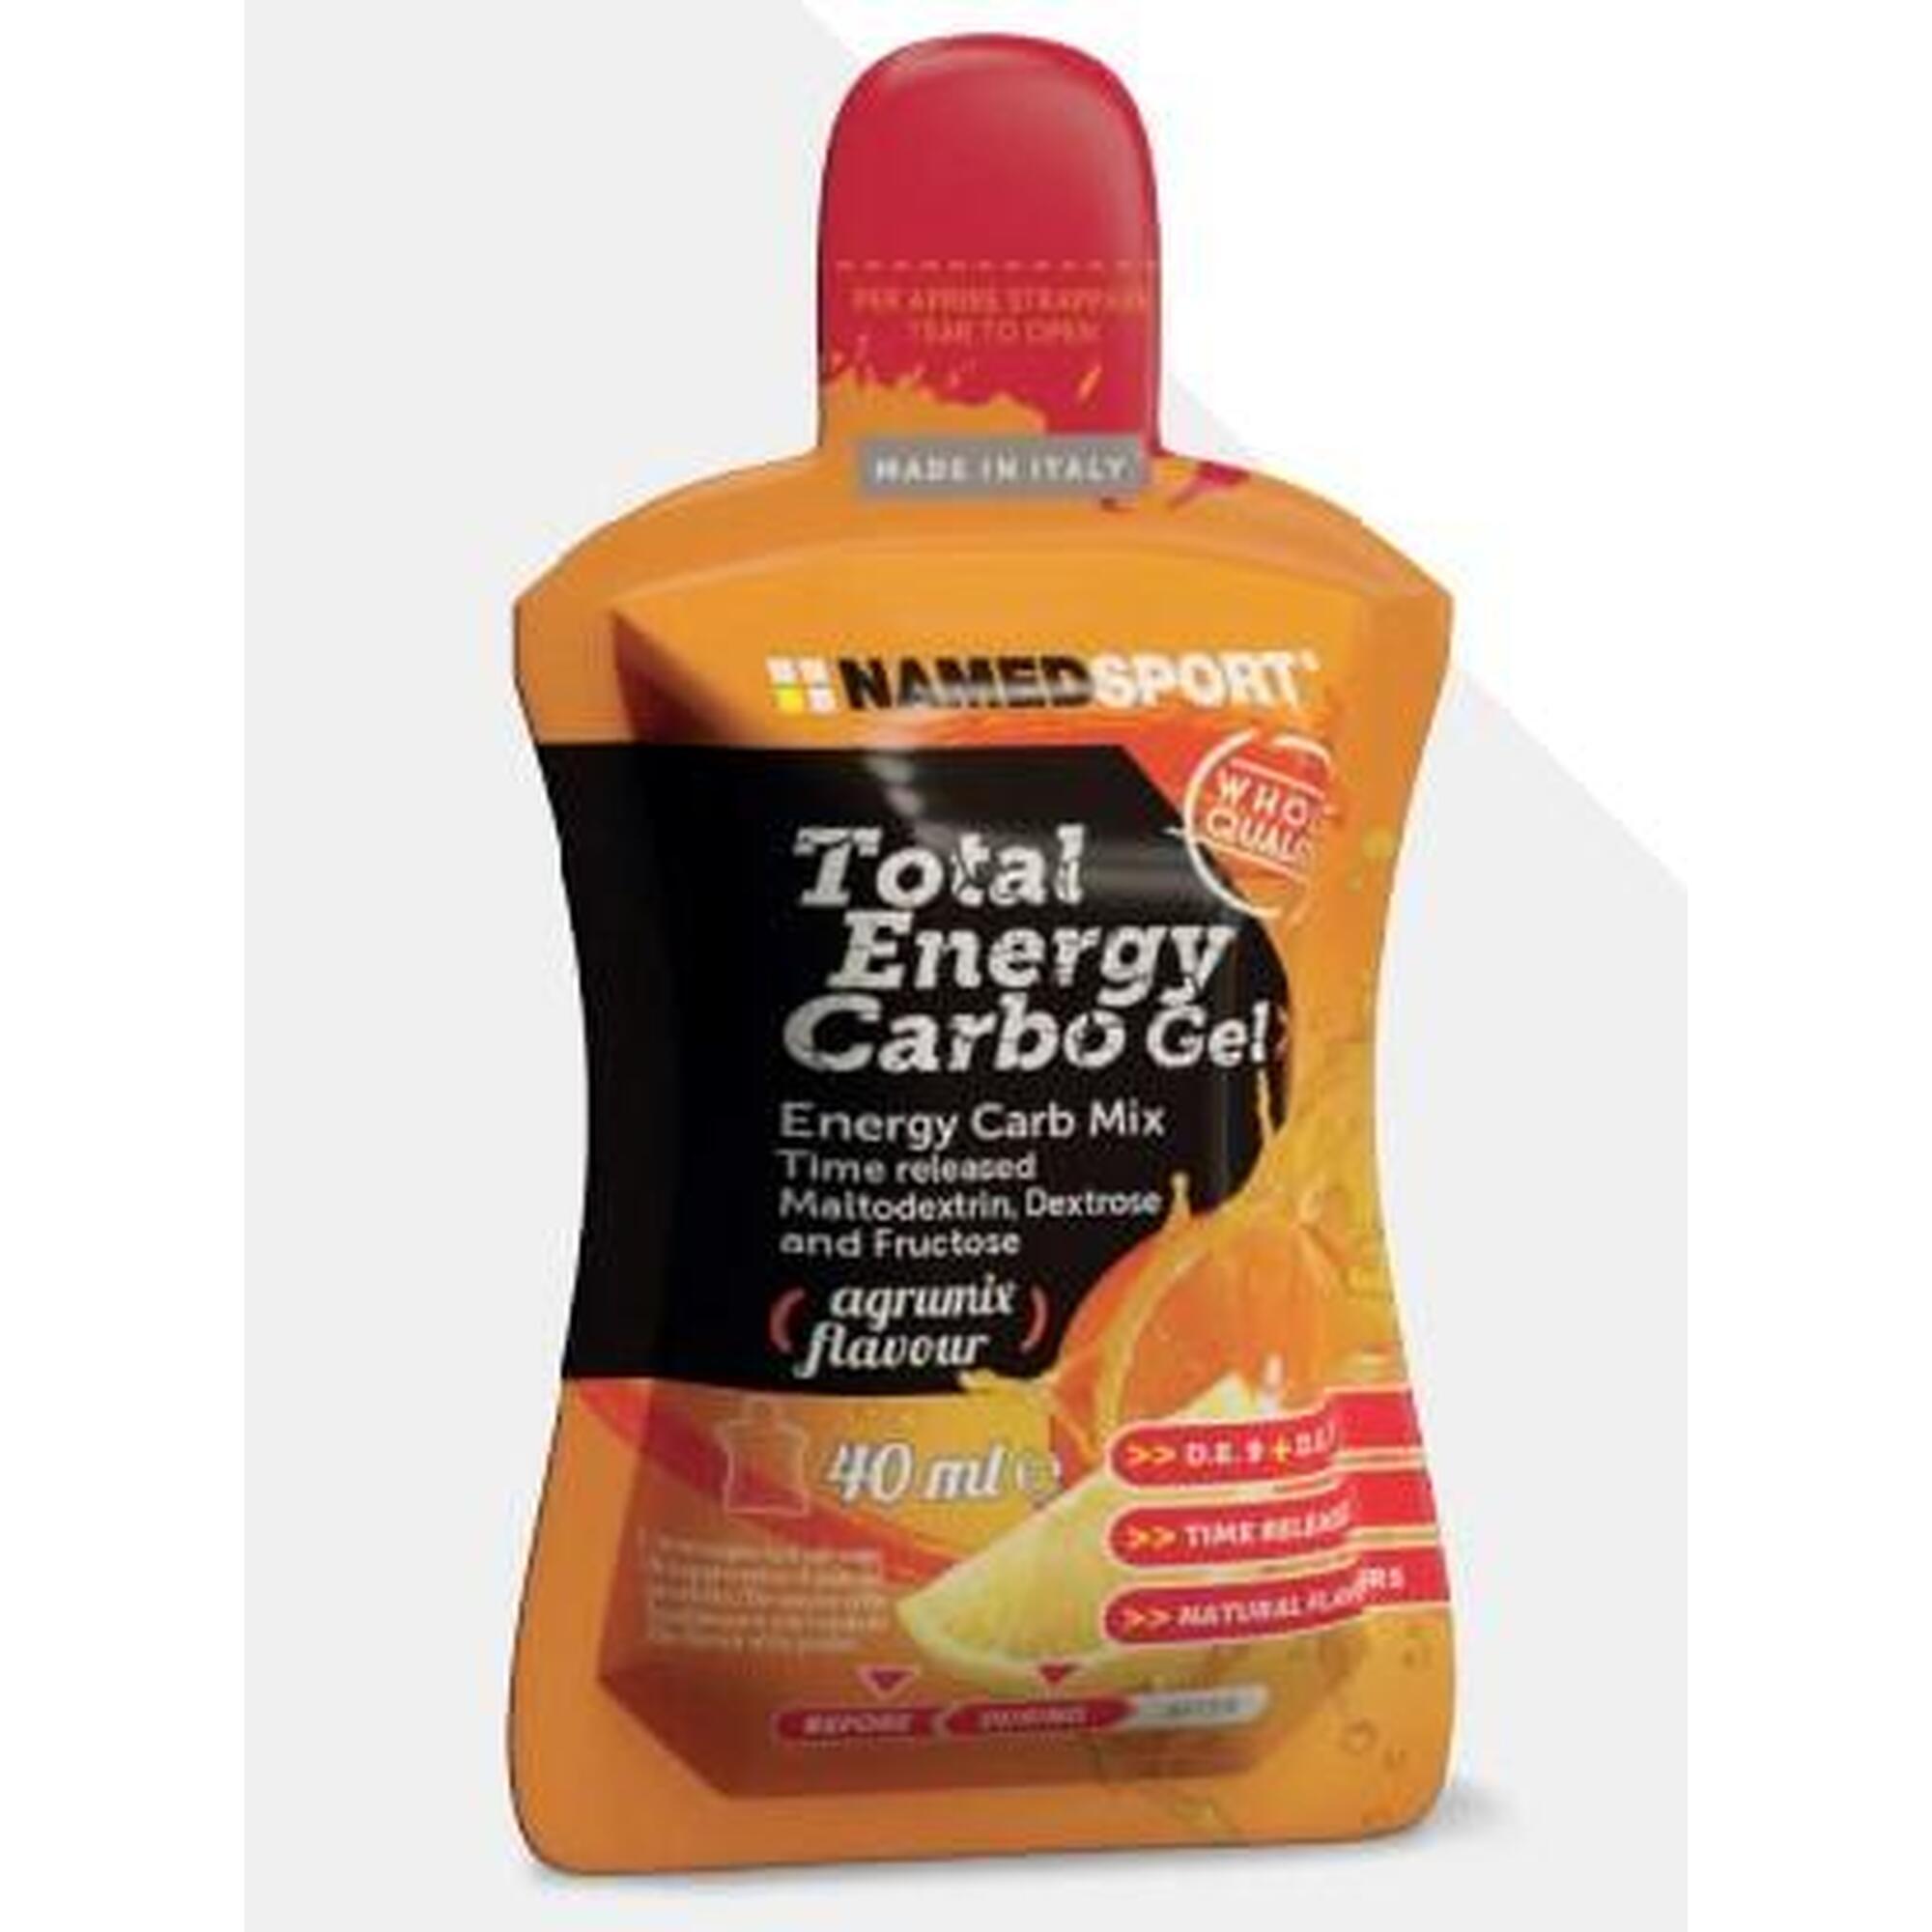 TOTAL ENERGY Carbo Gel 40ml - Orange & lemon